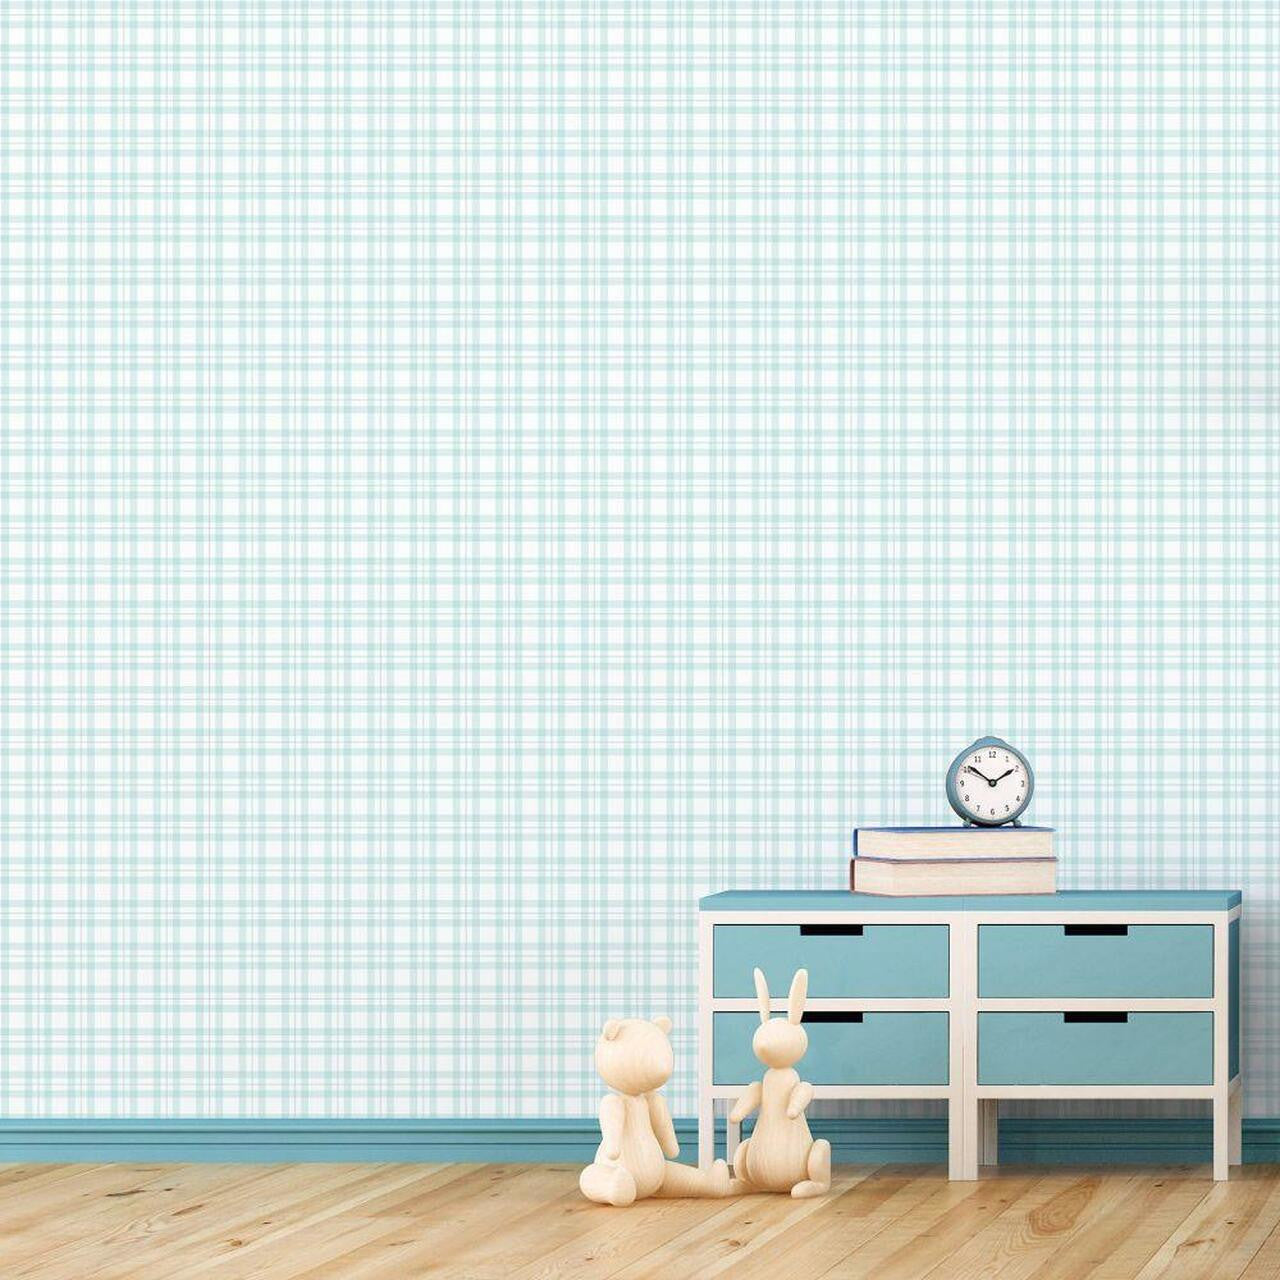 Plaid Tiny Tots 2 Nursery Room Wallpaper - Teal